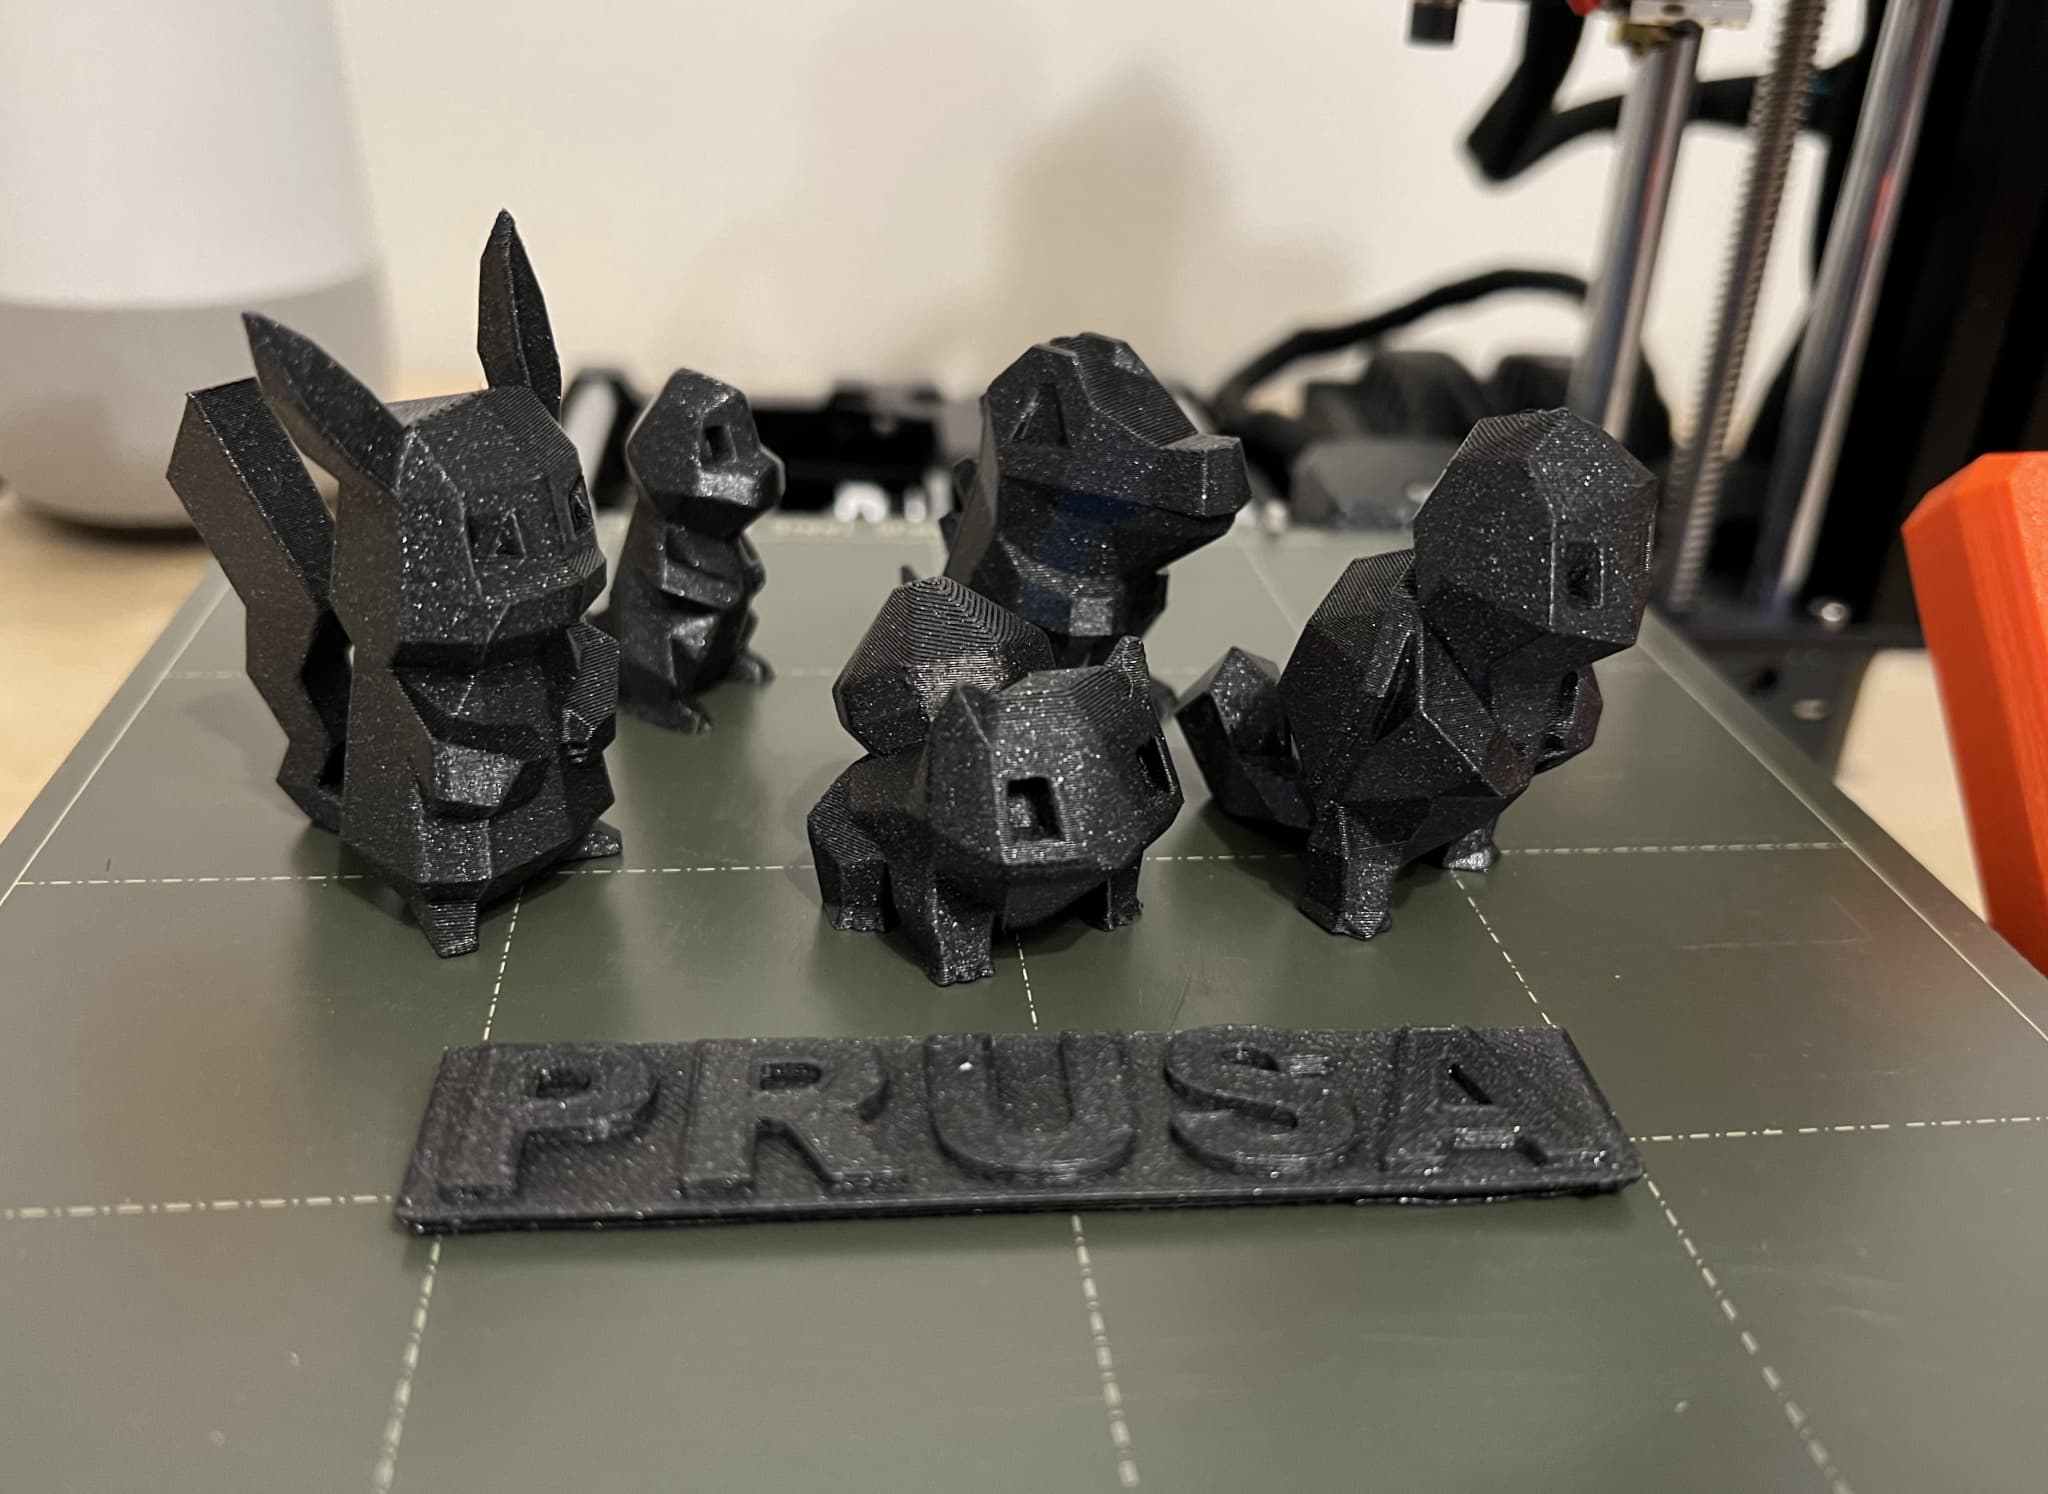 Printing with Prusa